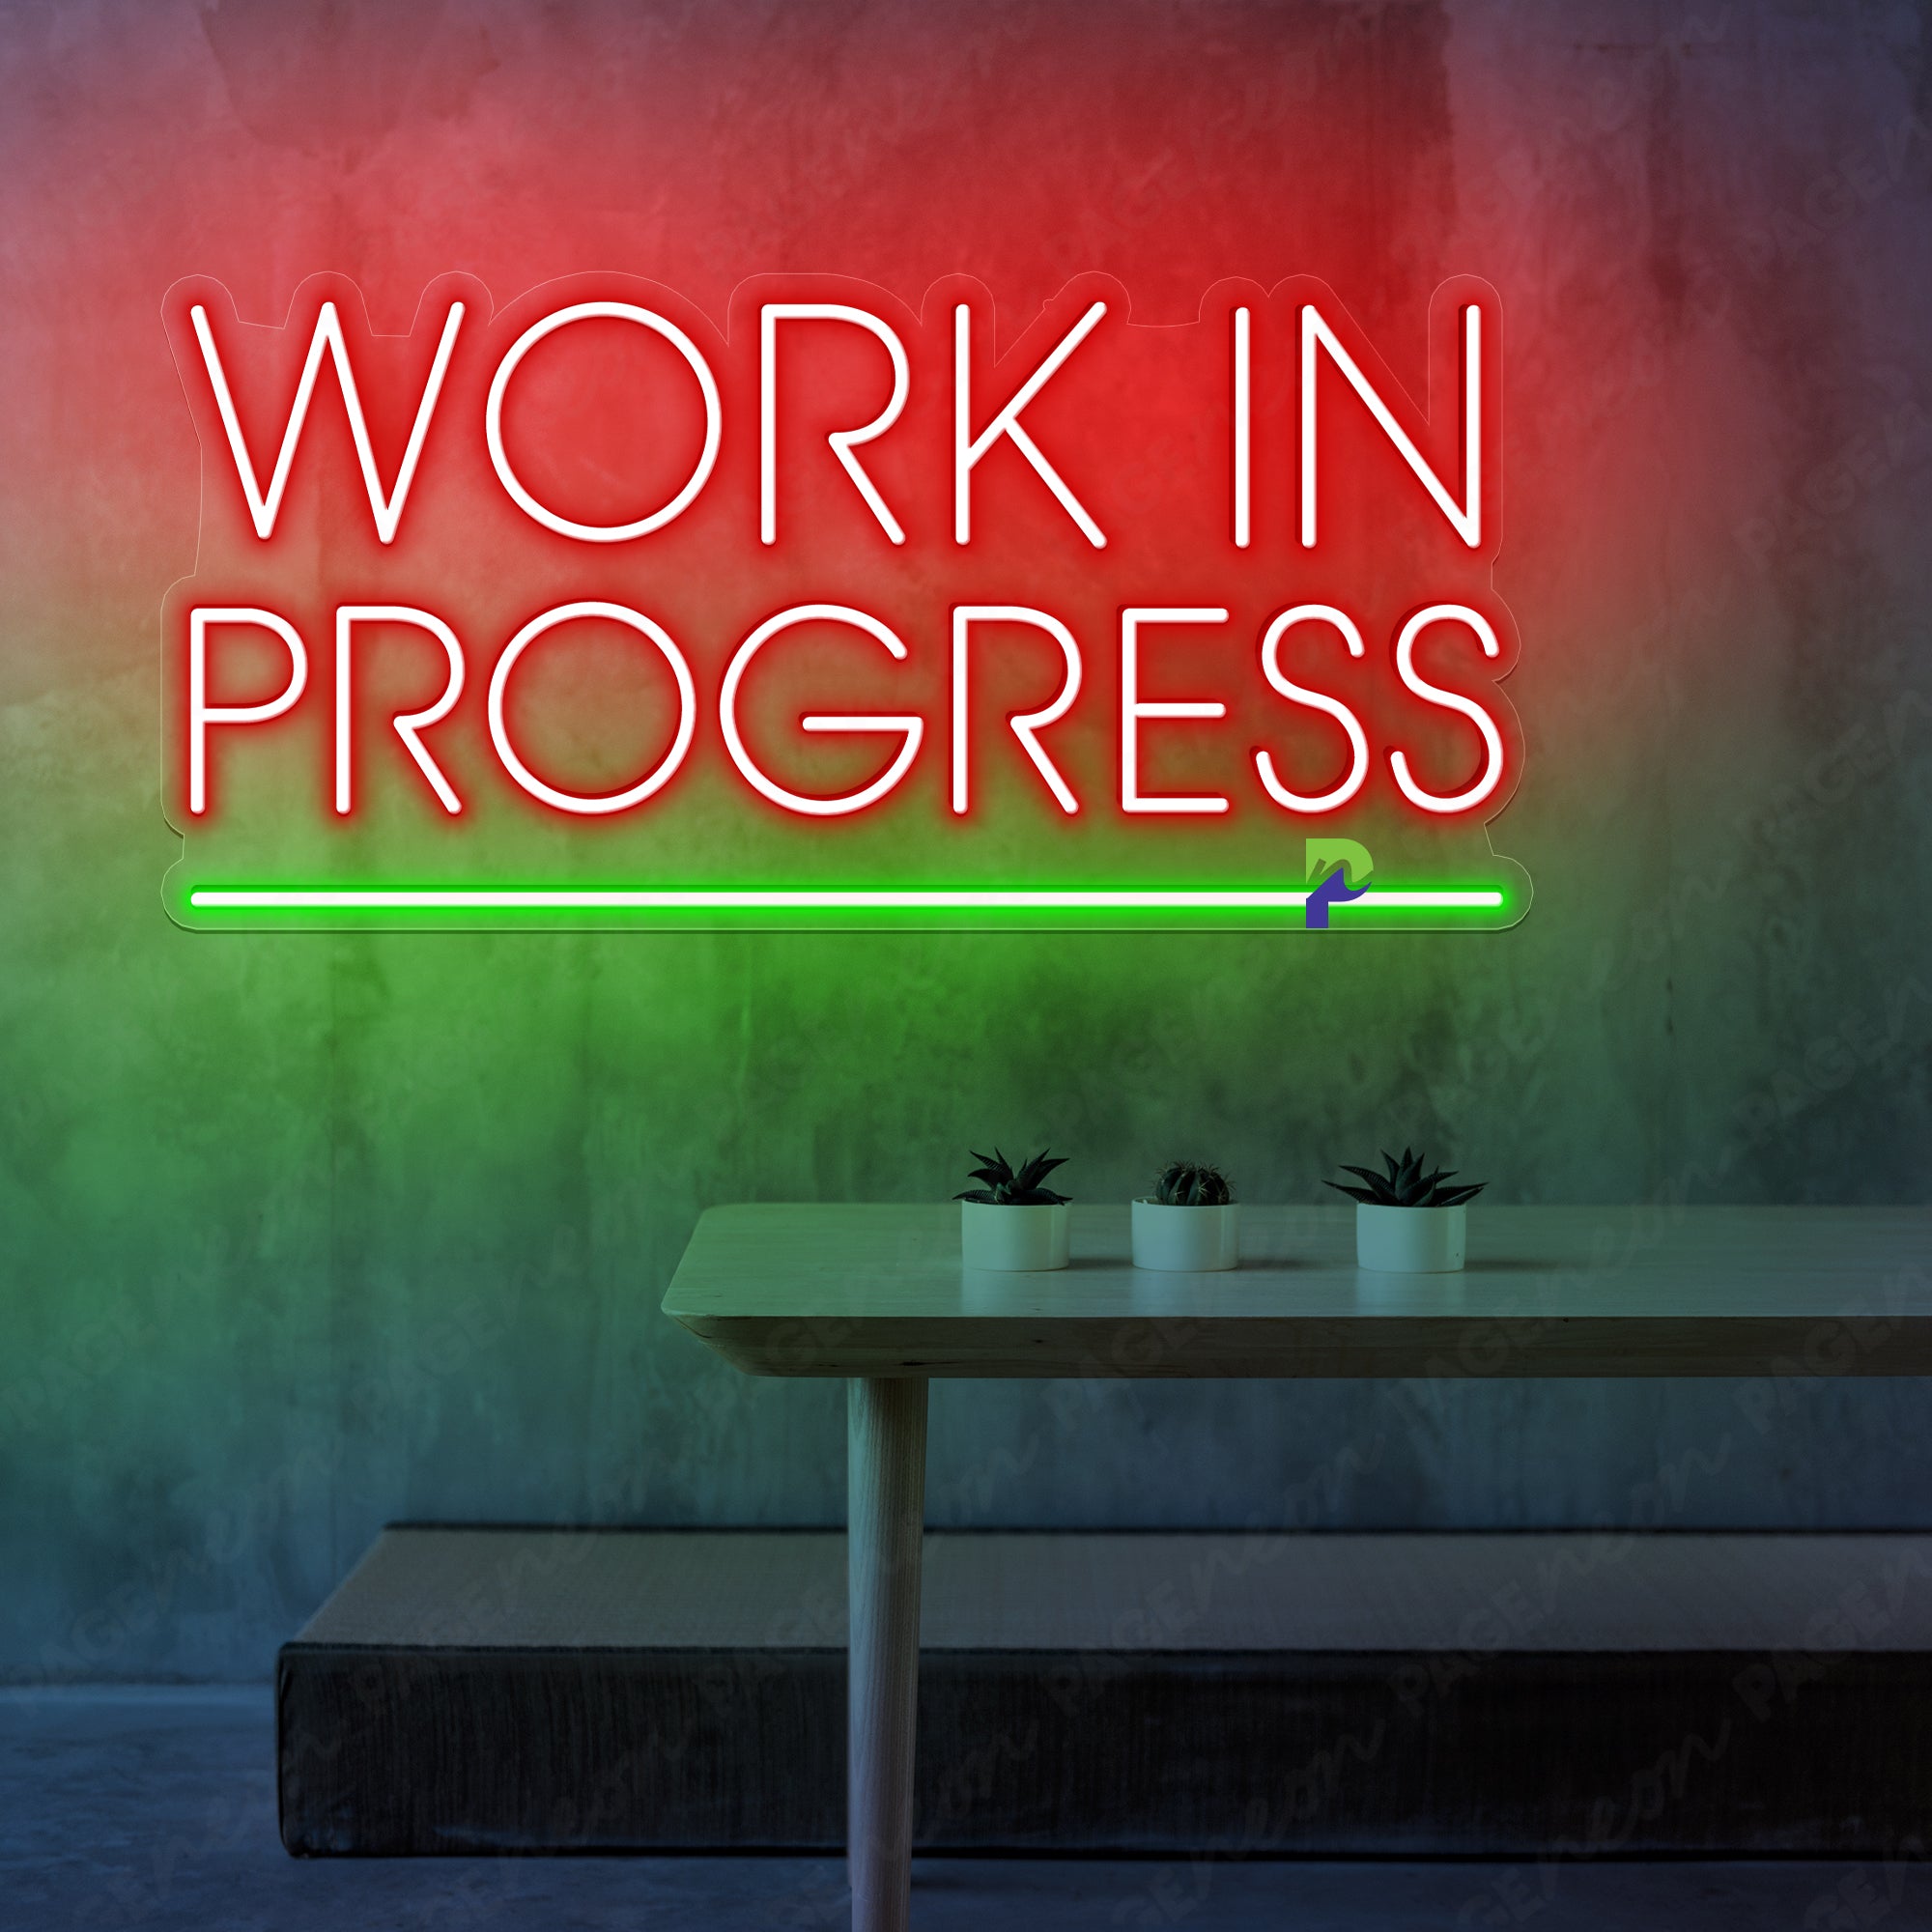 Work In Progress Neon Sign Led Light For Business